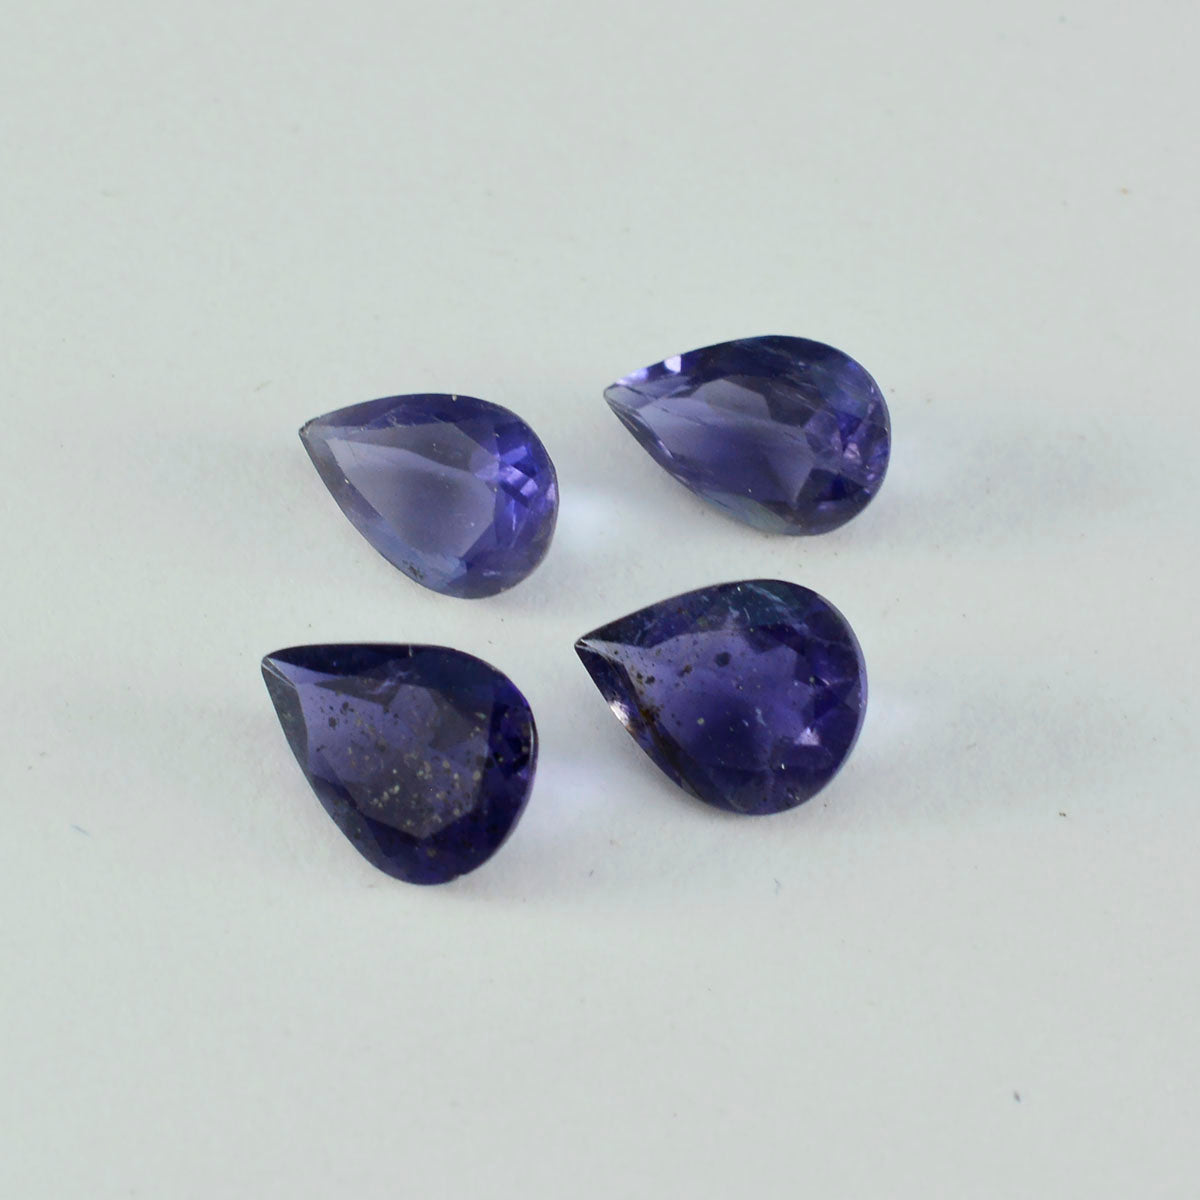 riyogems 1шт синий иолит граненый 10x14 мм грушевидная форма красивый качественный сыпучий драгоценный камень